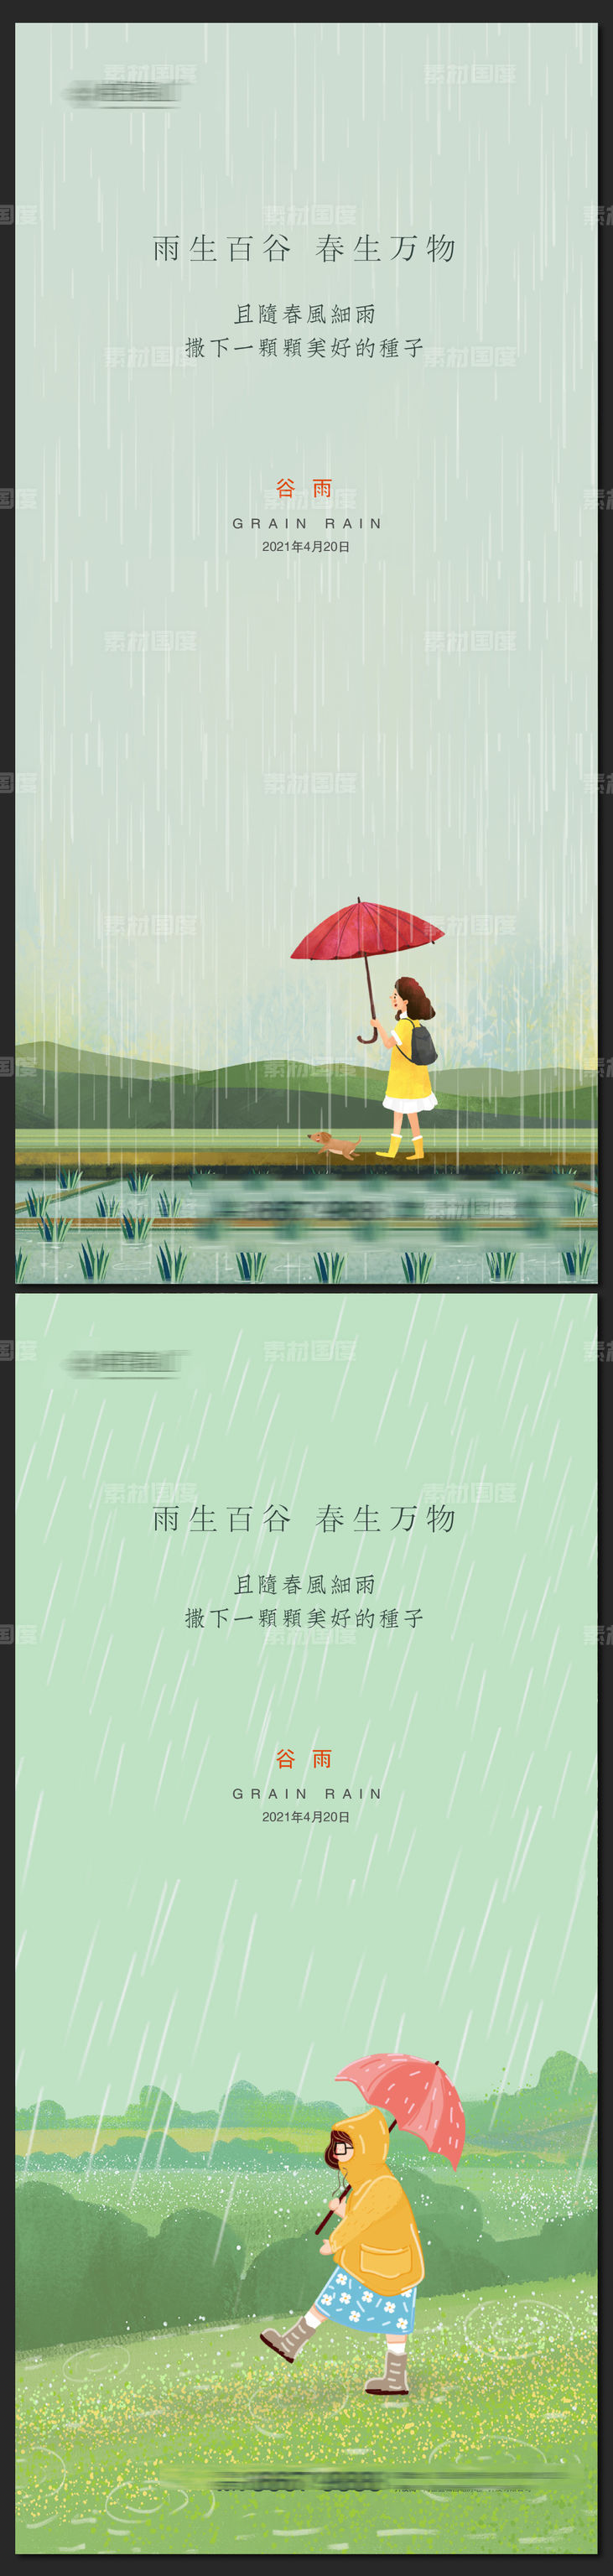 谷雨节气插画风格海报